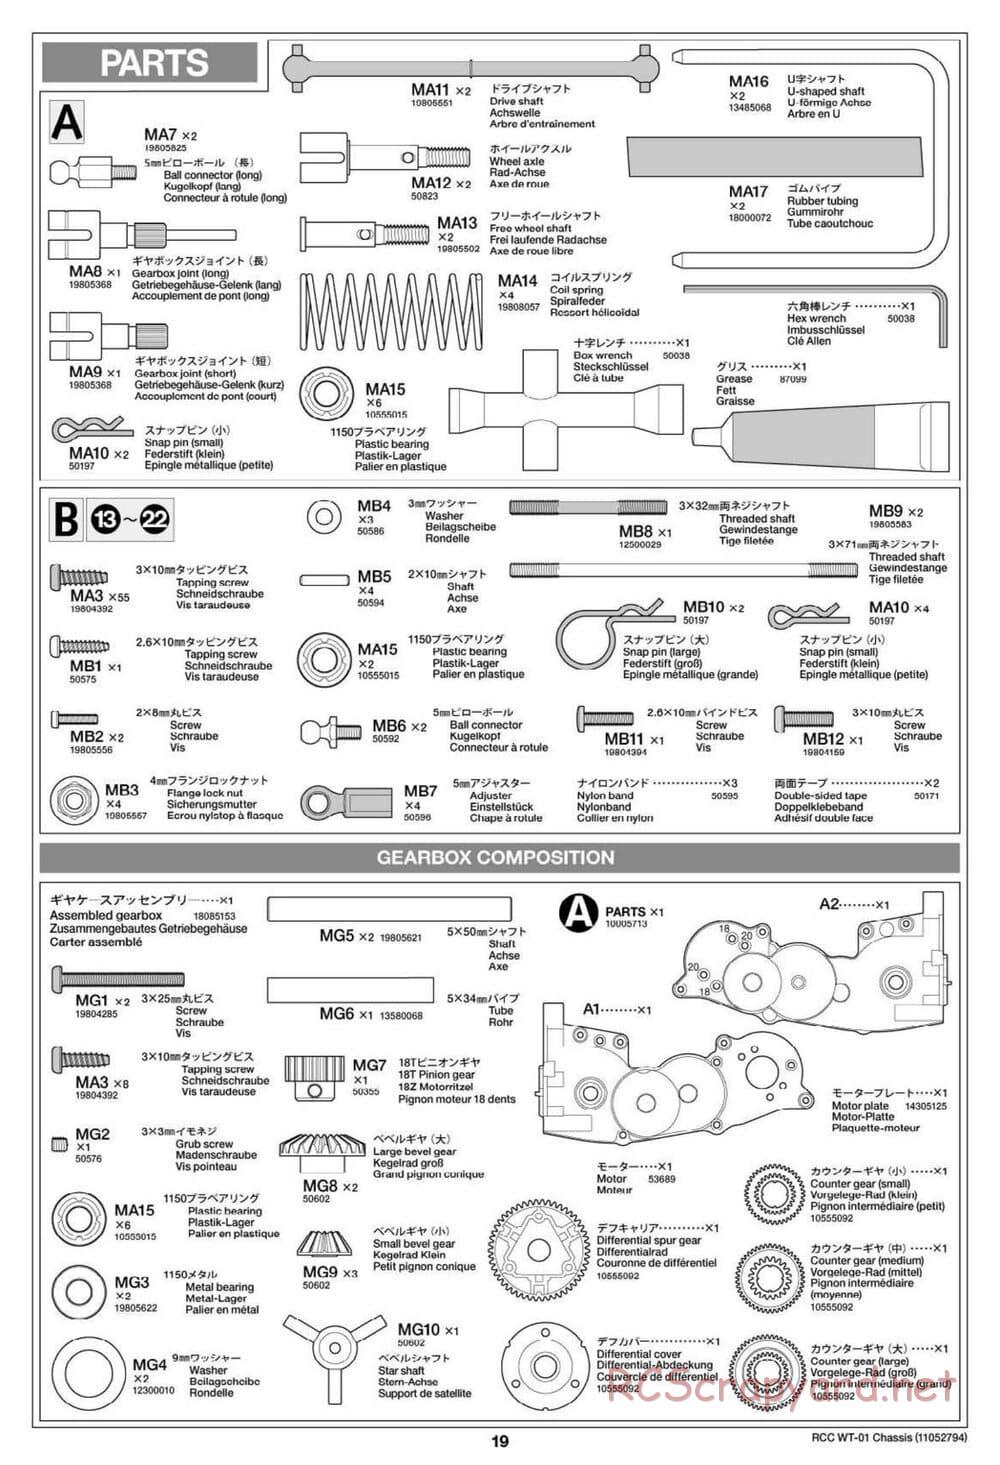 Tamiya - WT-01 Chassis - Manual - Page 19